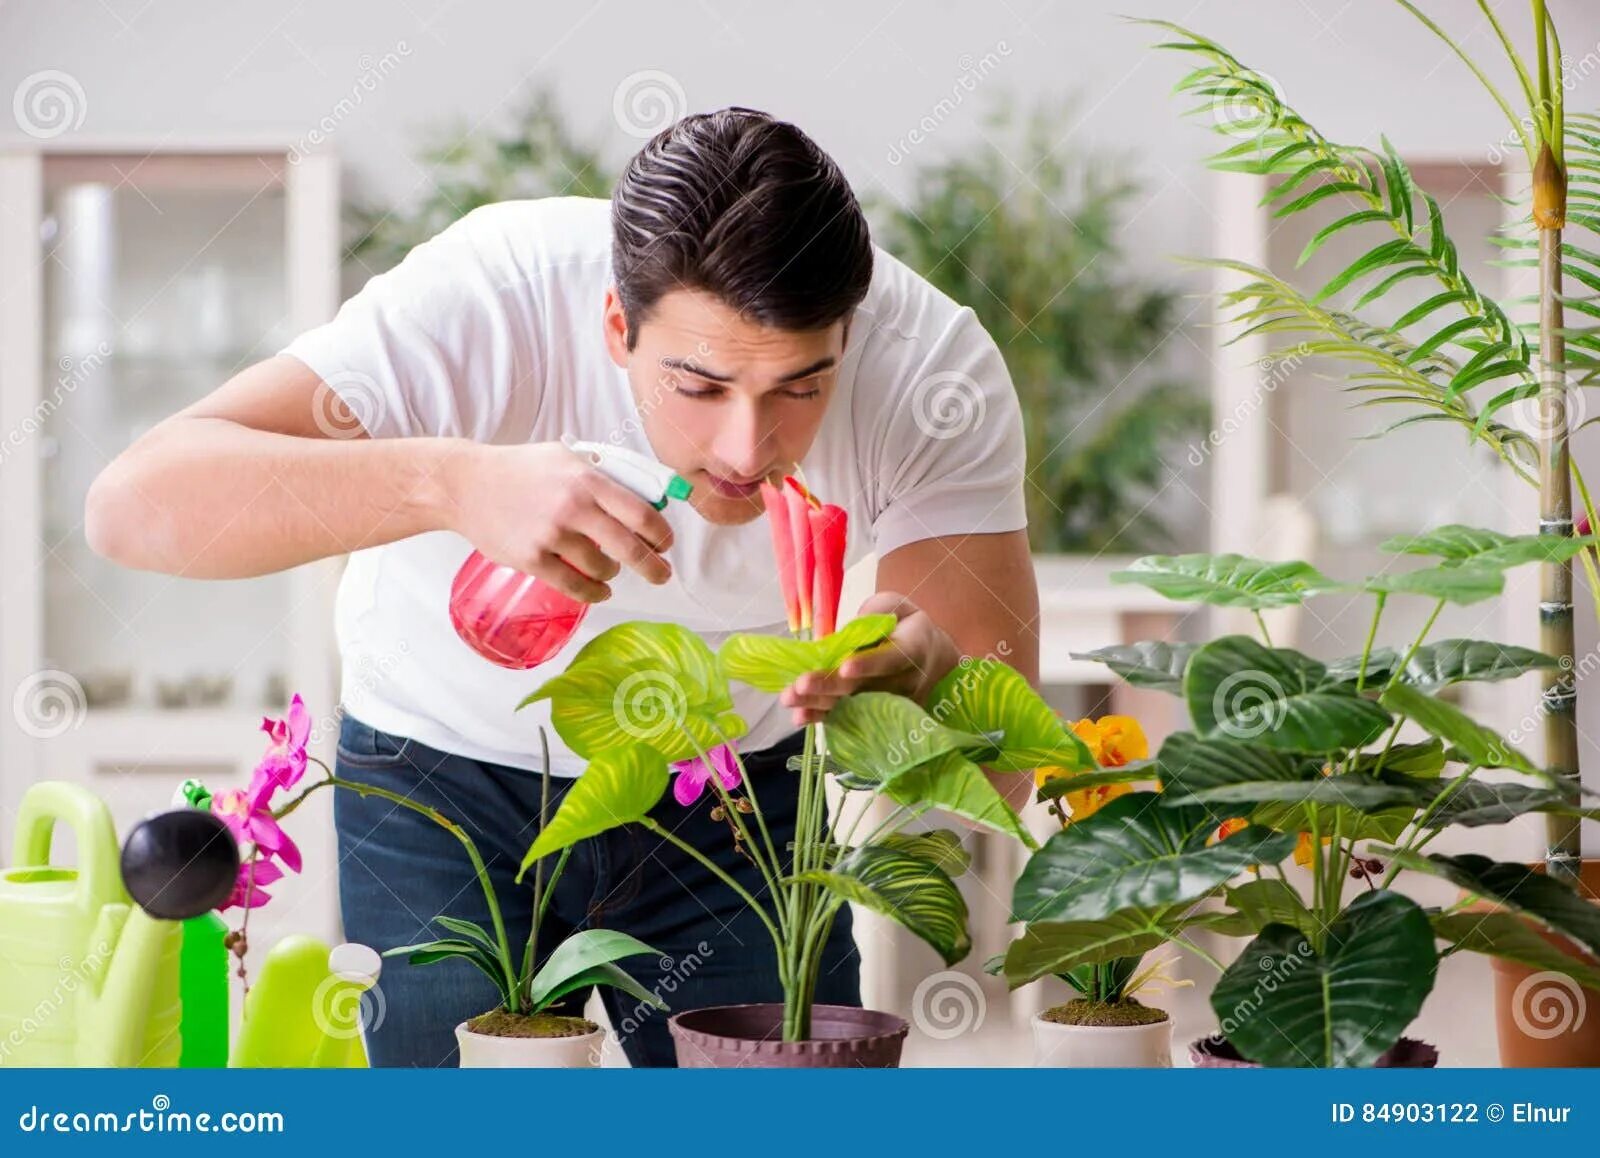 Забота о растении. Человек ухаживает за растениями. Заботиться о растениях. Специалист по уходу за растениями. Забота за растением.